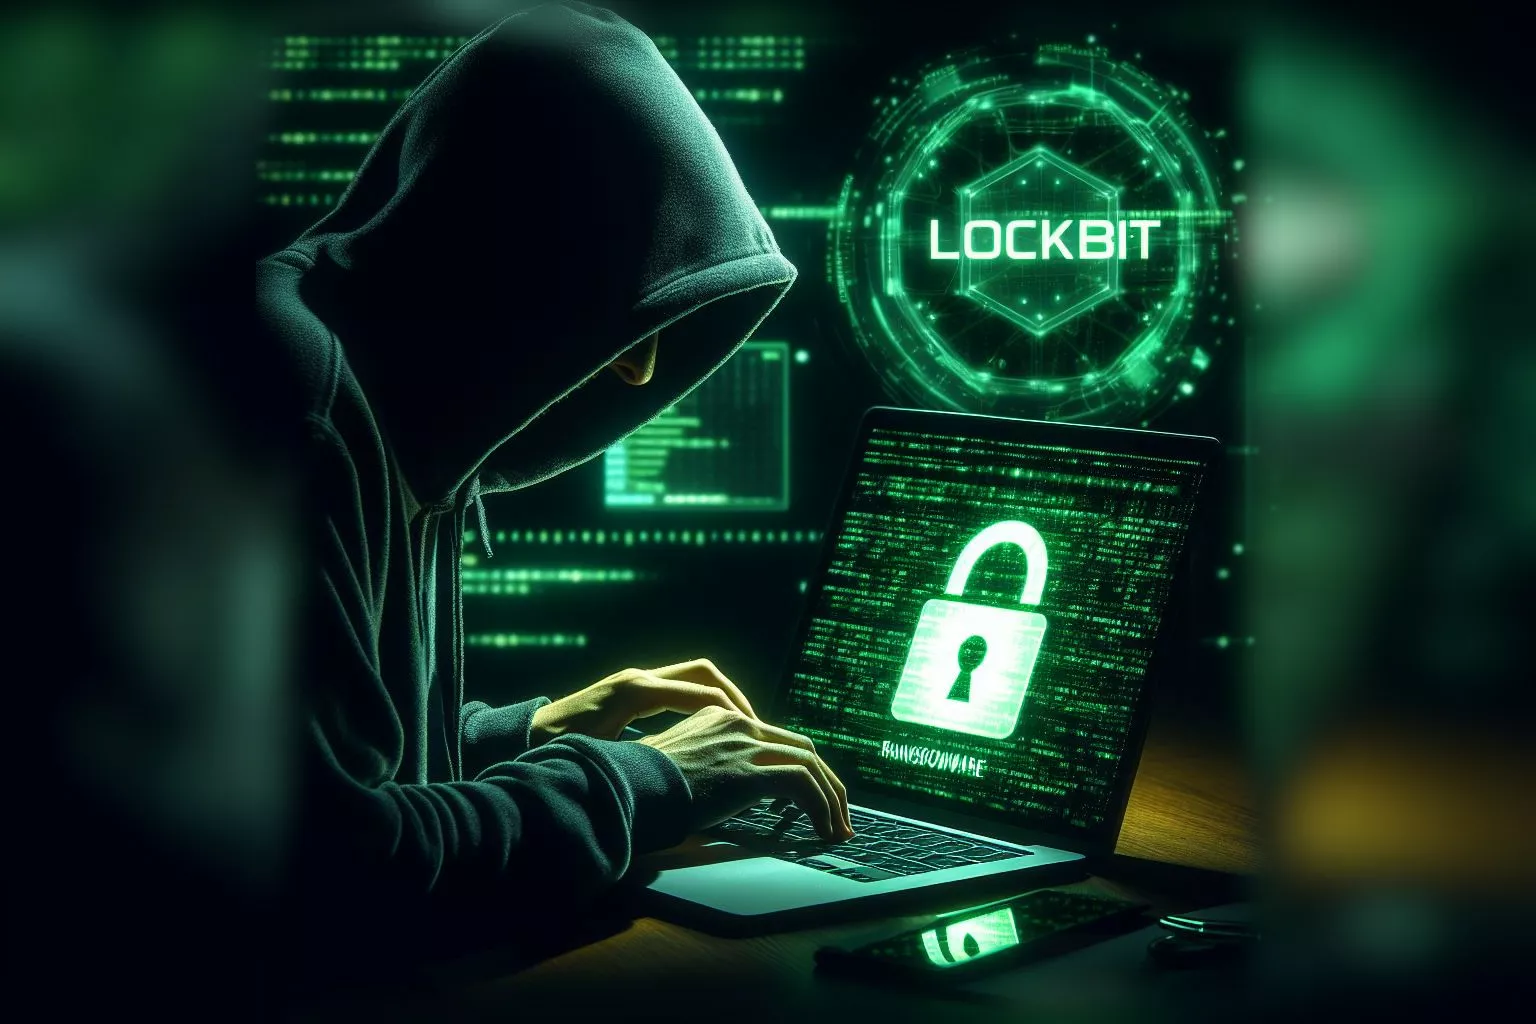 Mauvaise nouvelle avec le ransomware LockBit